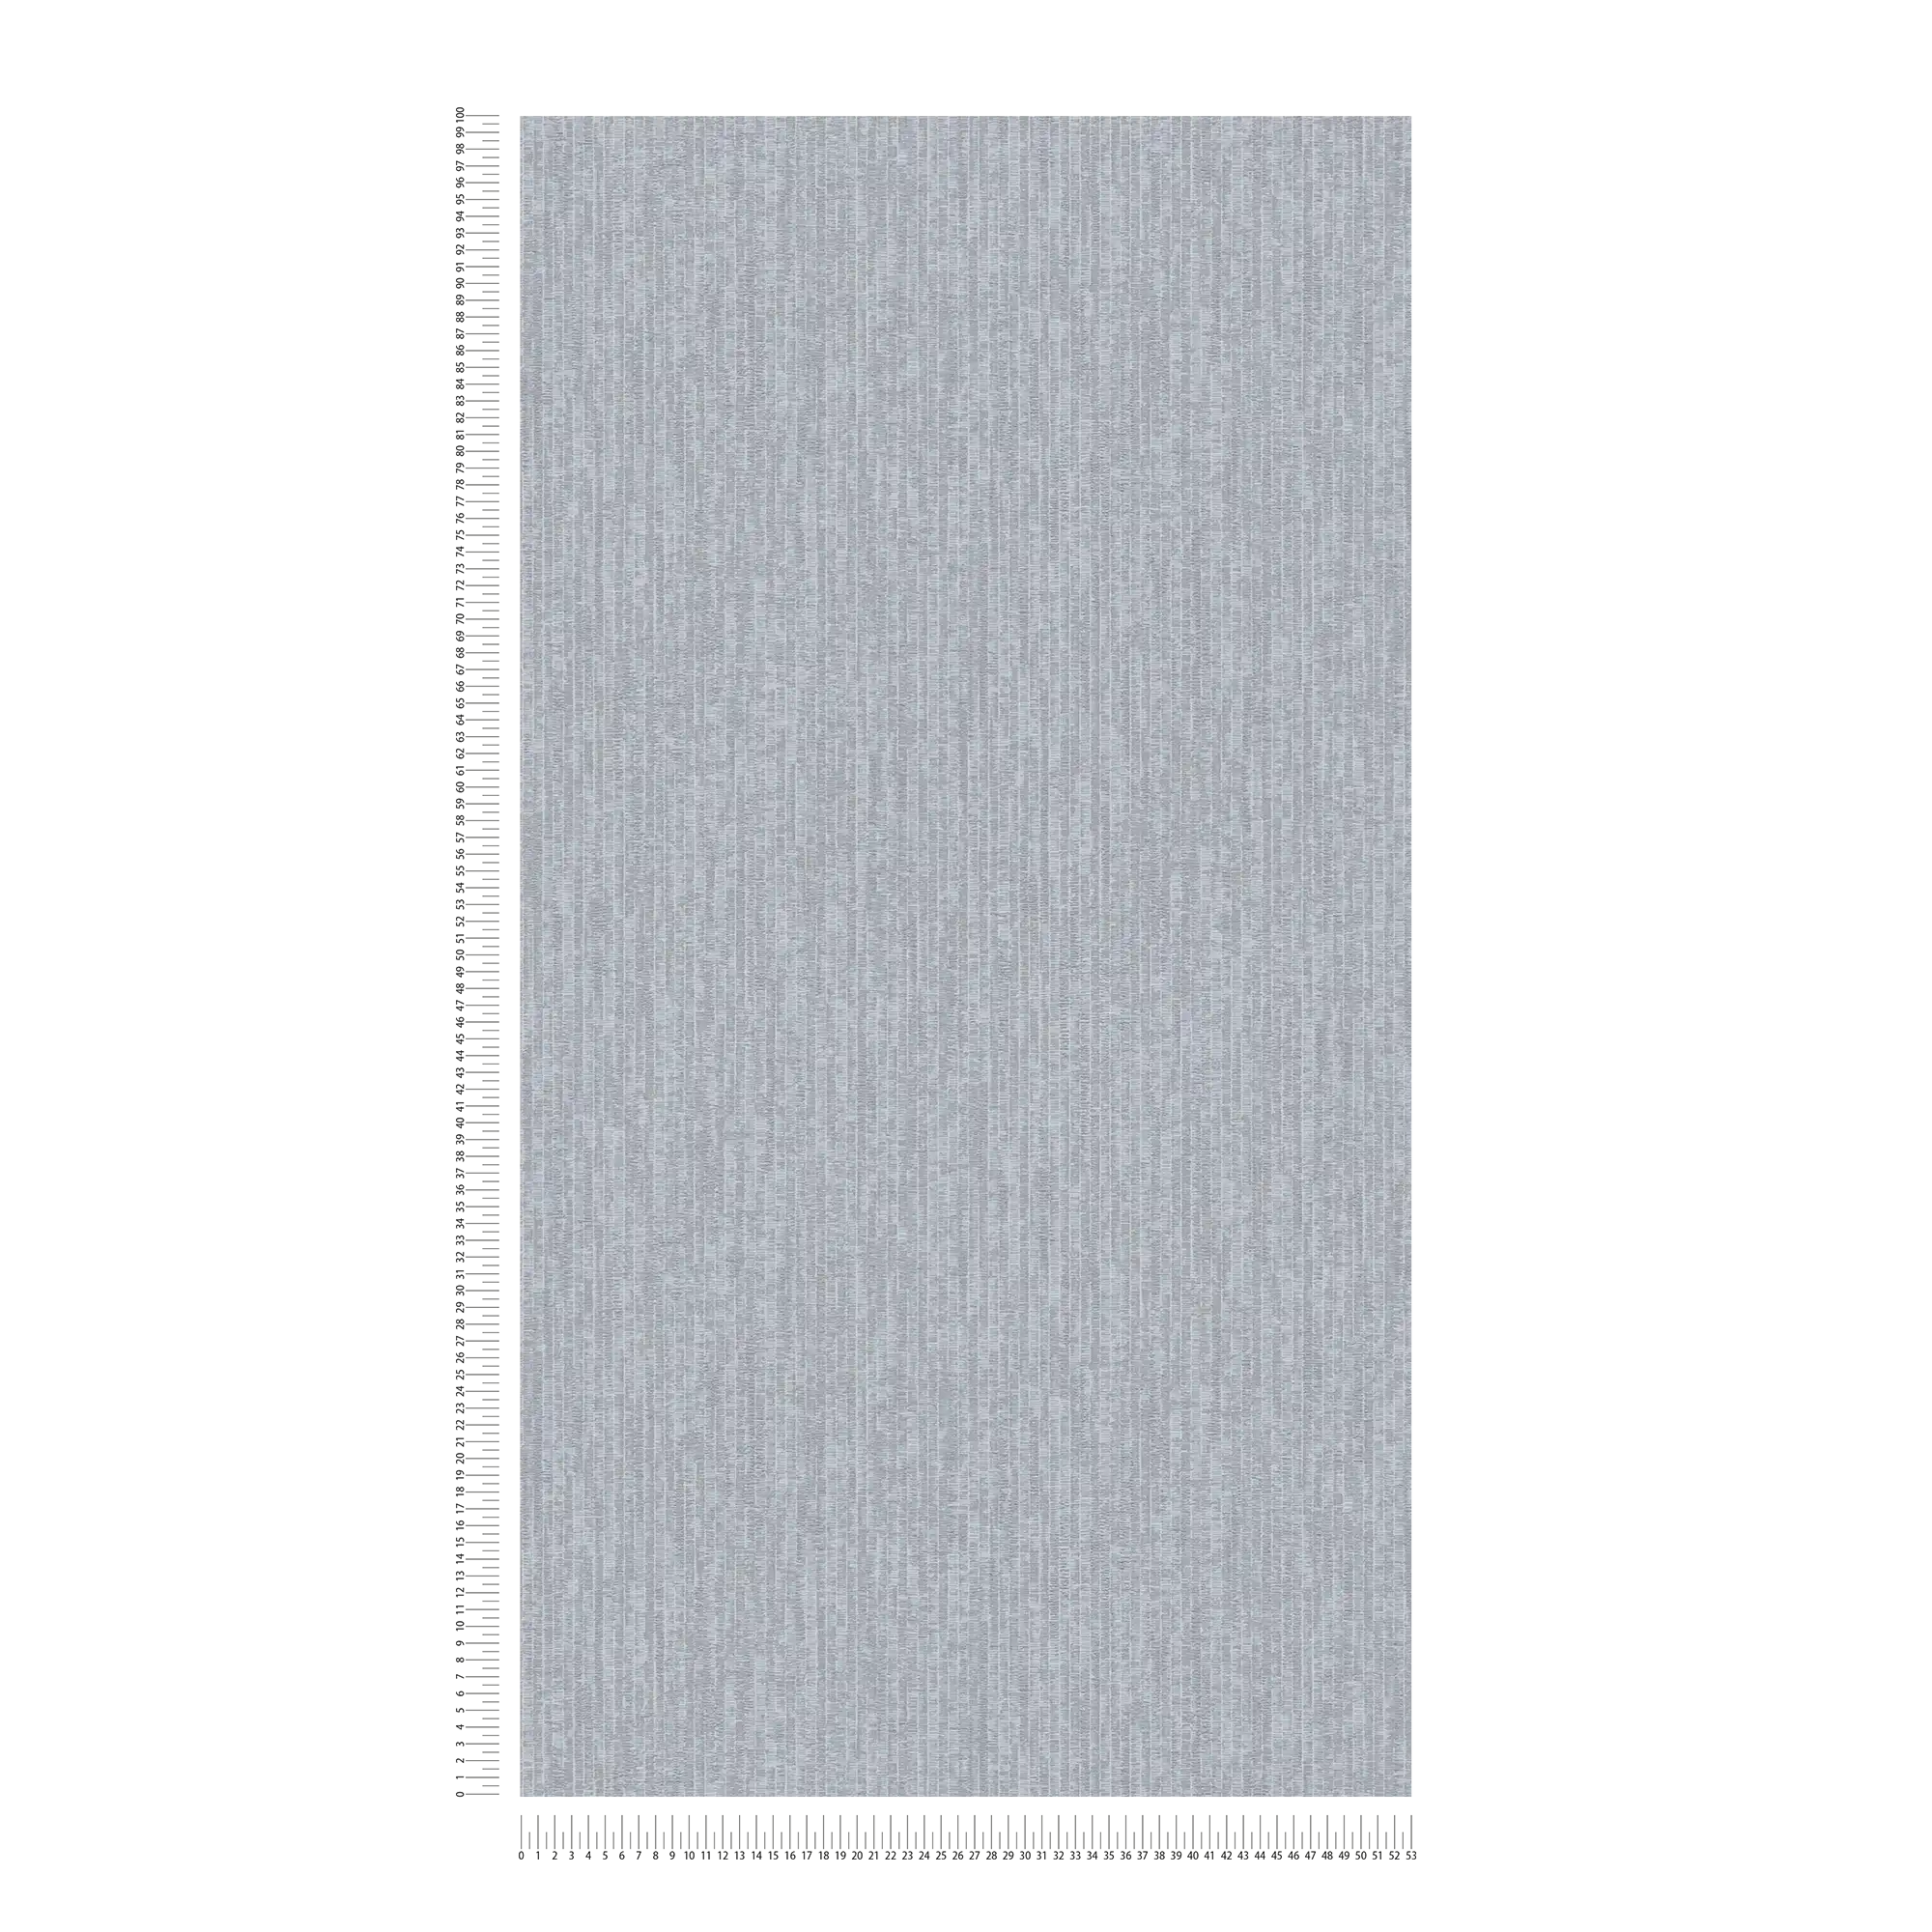             Papier peint bleu chiné aspect tissé métallique - bleu, gris
        